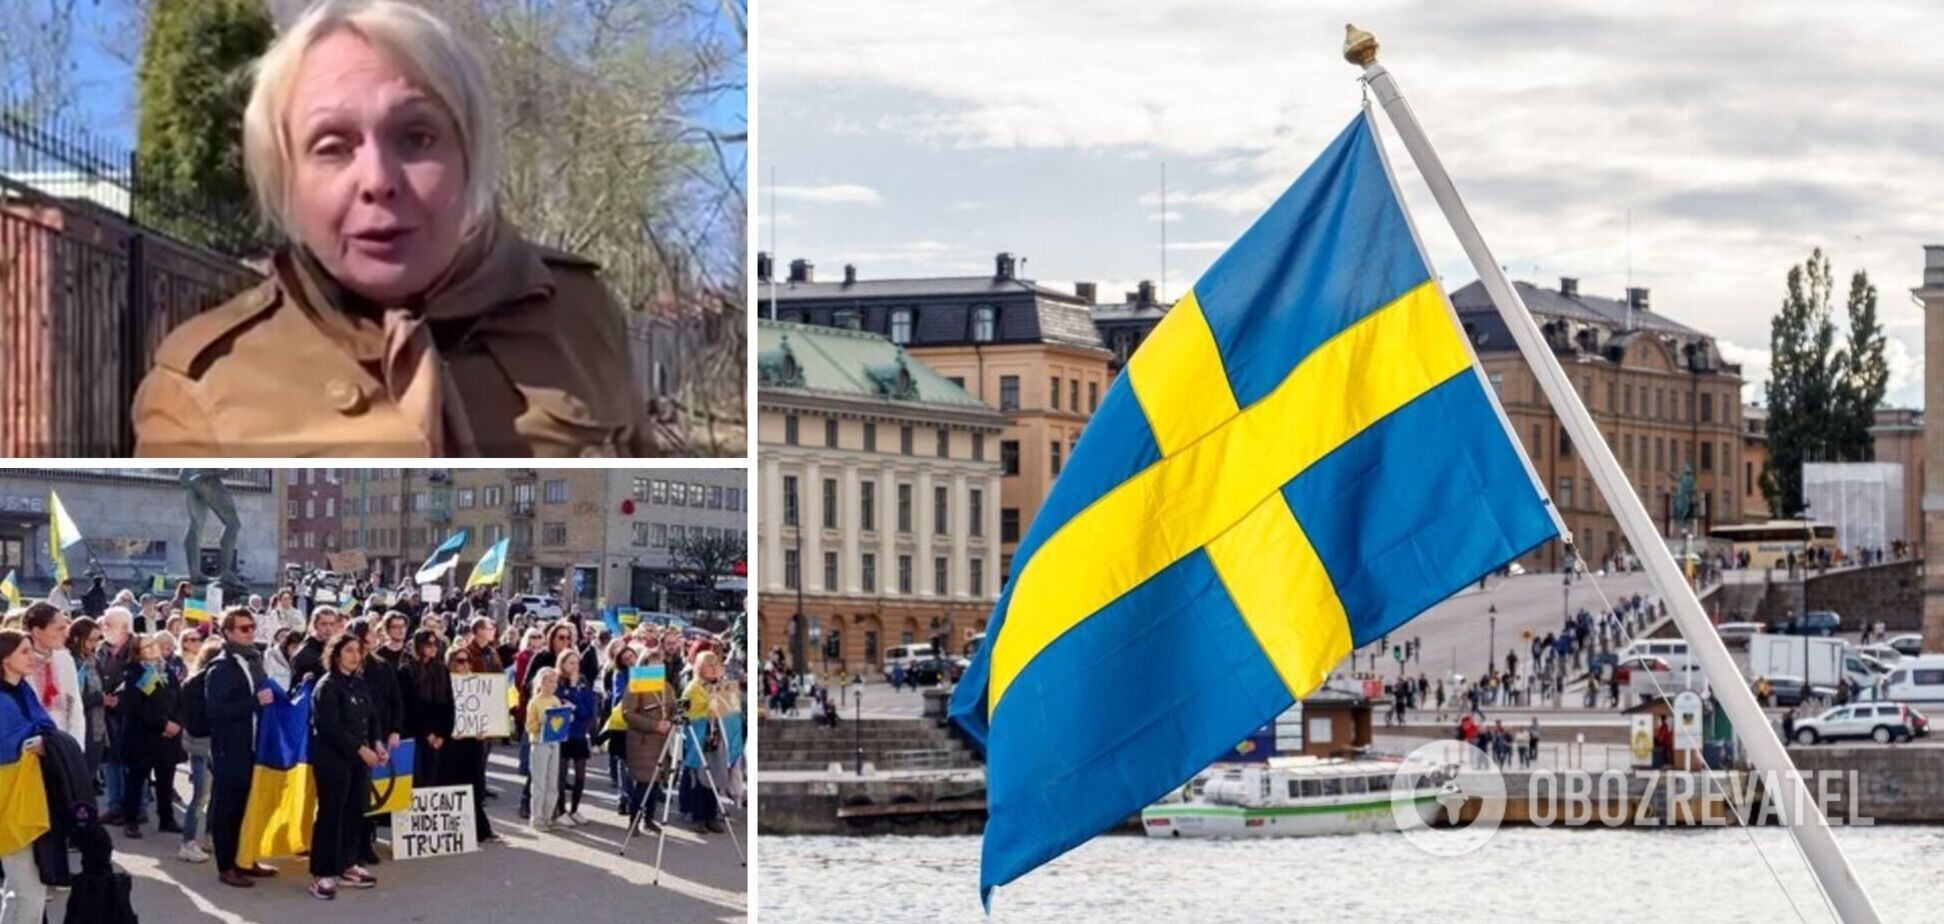 'Вы тухлые грязные фашисты!' В Швеции россиянка сорвала на улице украинскую символику и пыталась унизить украинку. Видео